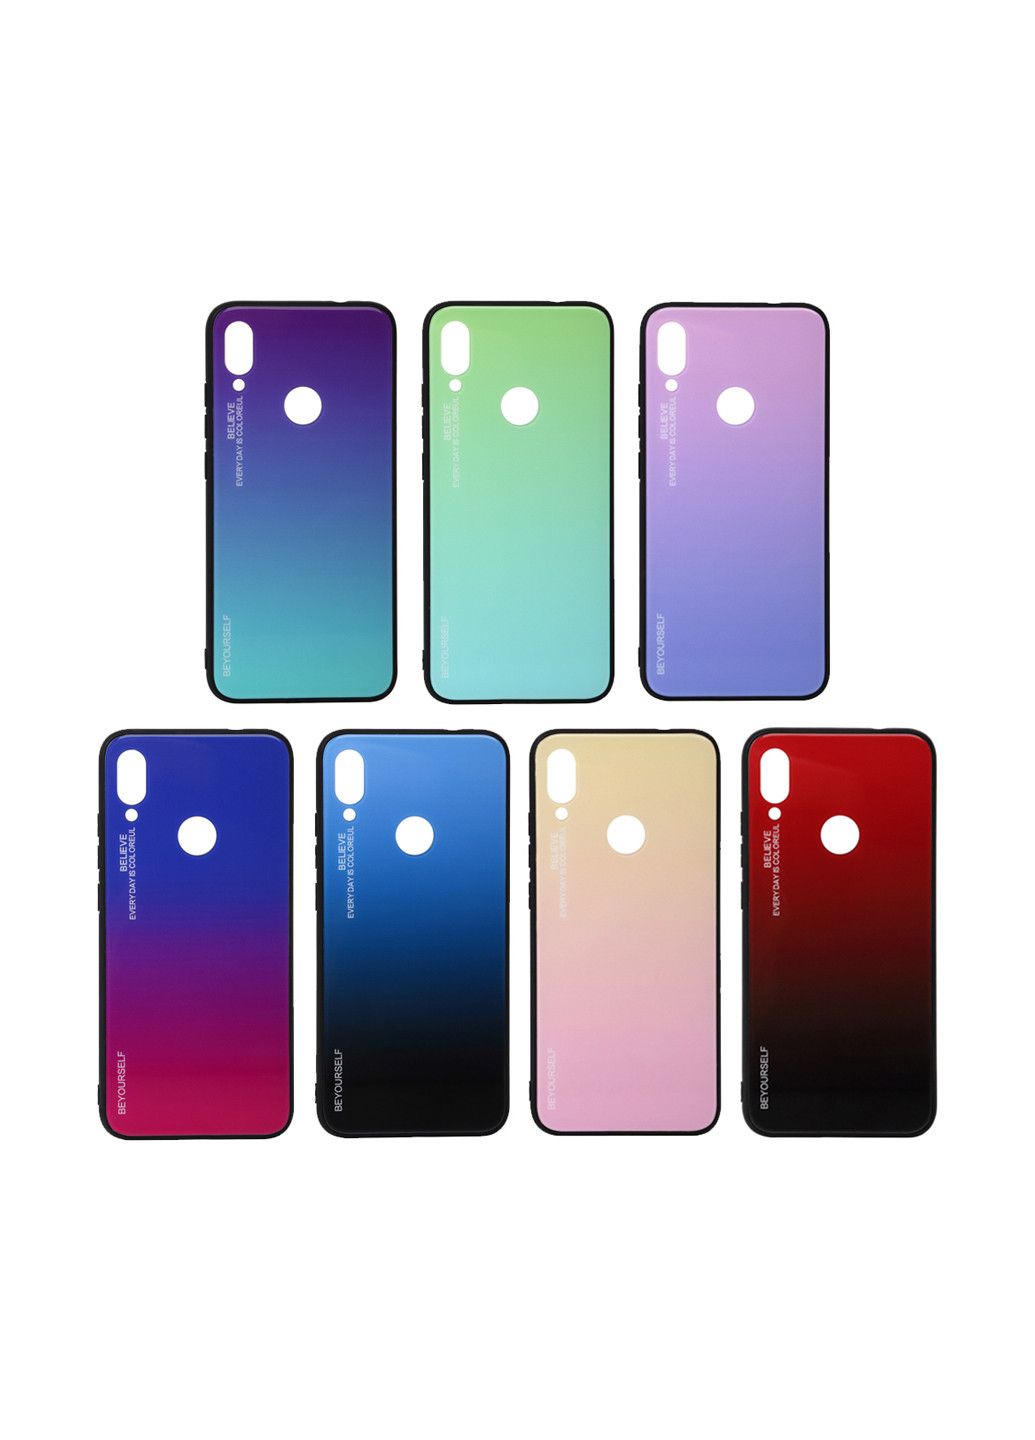 Панель Gradient Glass для Xiaomi Mi 8 Lite Pink-Purple (703573) BeCover gradient glass для xiaomi mi 8 lite pink-purple (703573) (147838026)